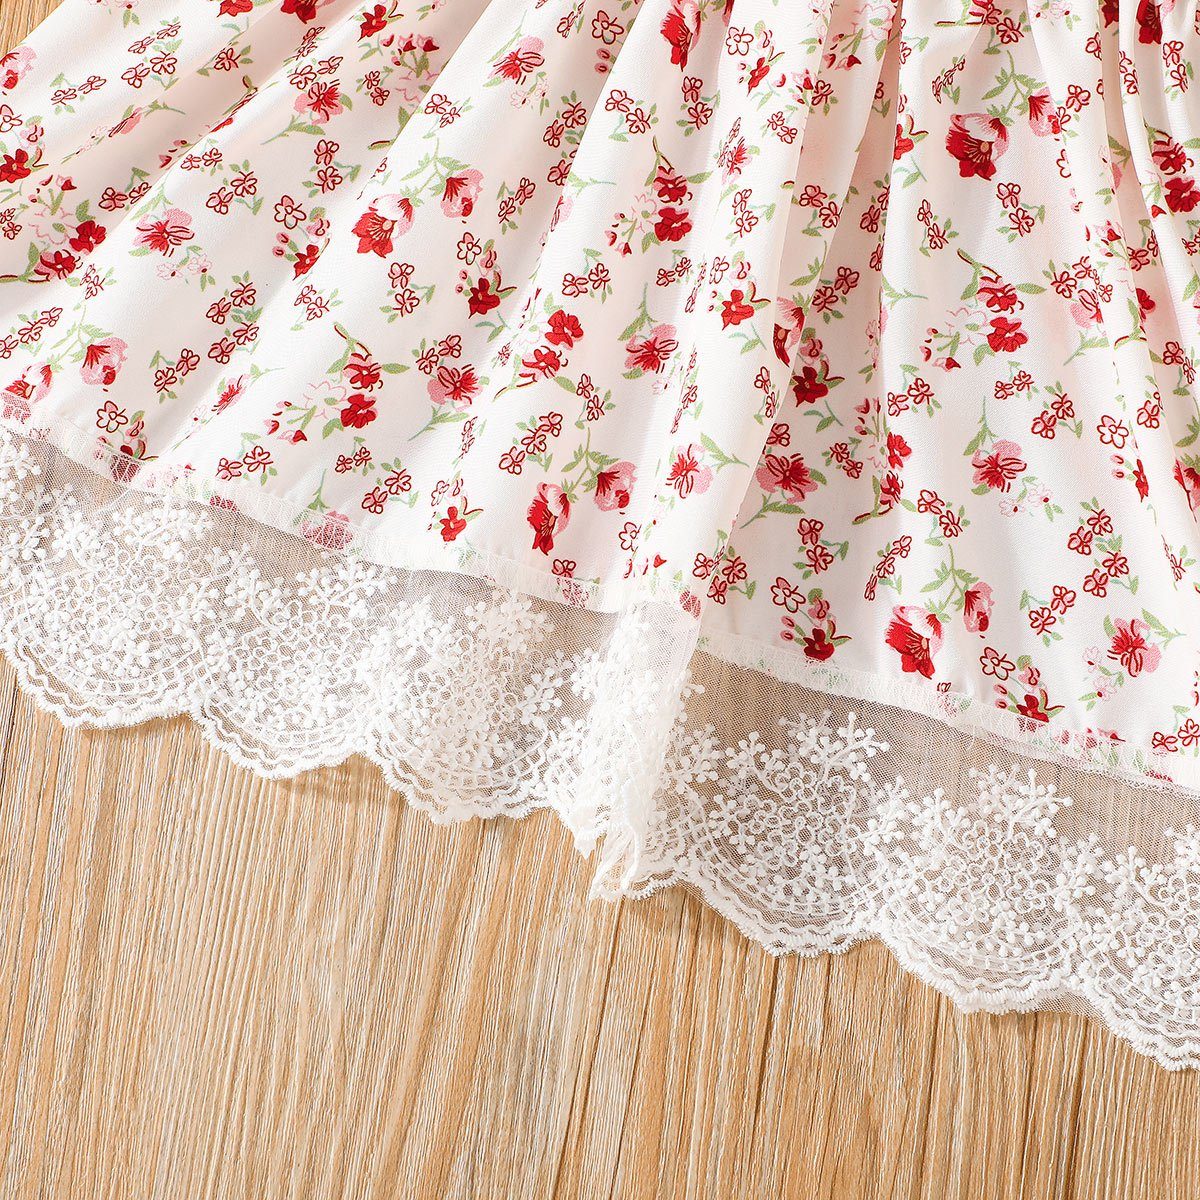 Kinder Mädchen (Gr. 50 - 92) LAPA Strandkleid Baby Mädchen fliegende Ärmel Blumendruck Kleid, A-Linie Kleid